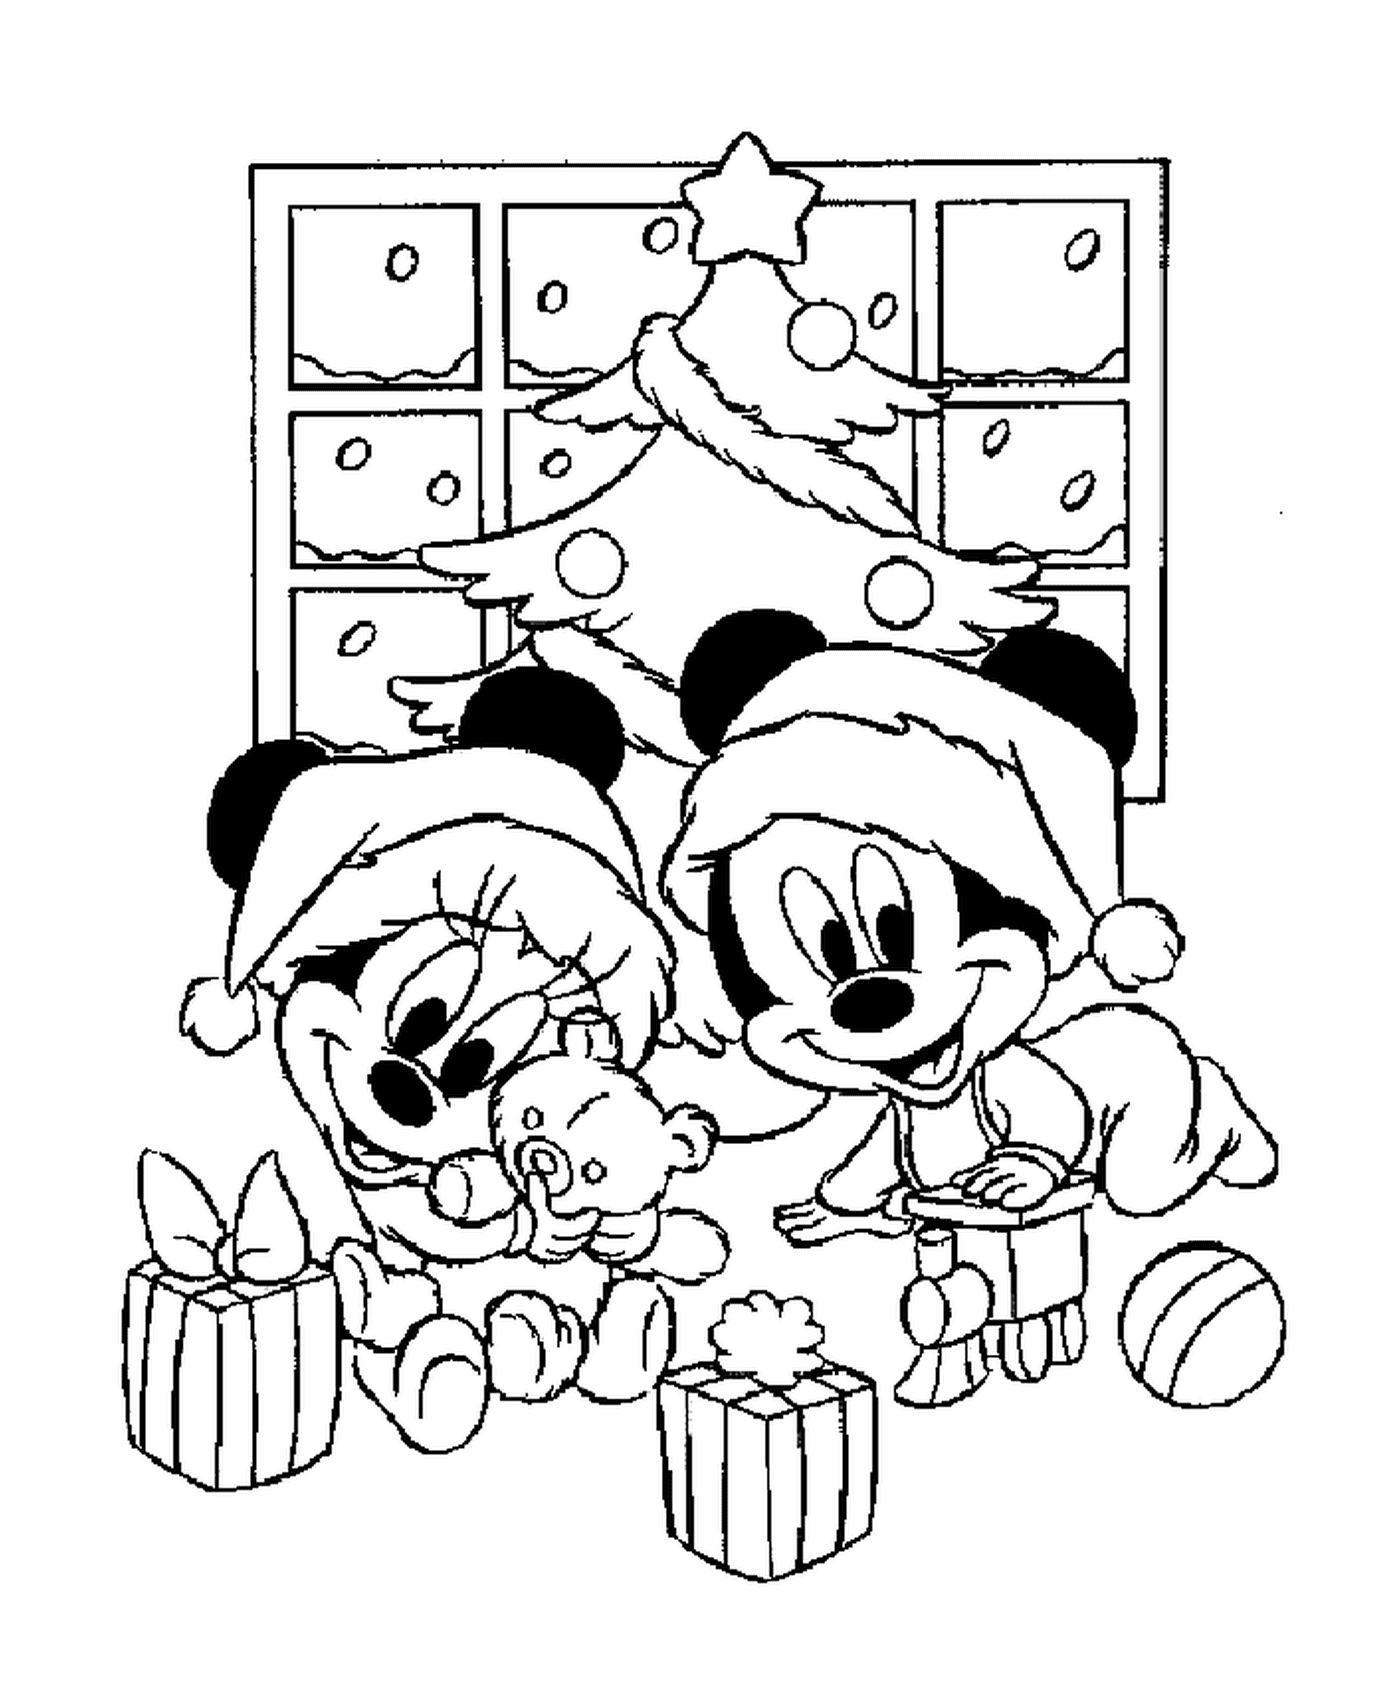  Bebés Mickey y Minnie jugando con sus regalos delante del árbol 